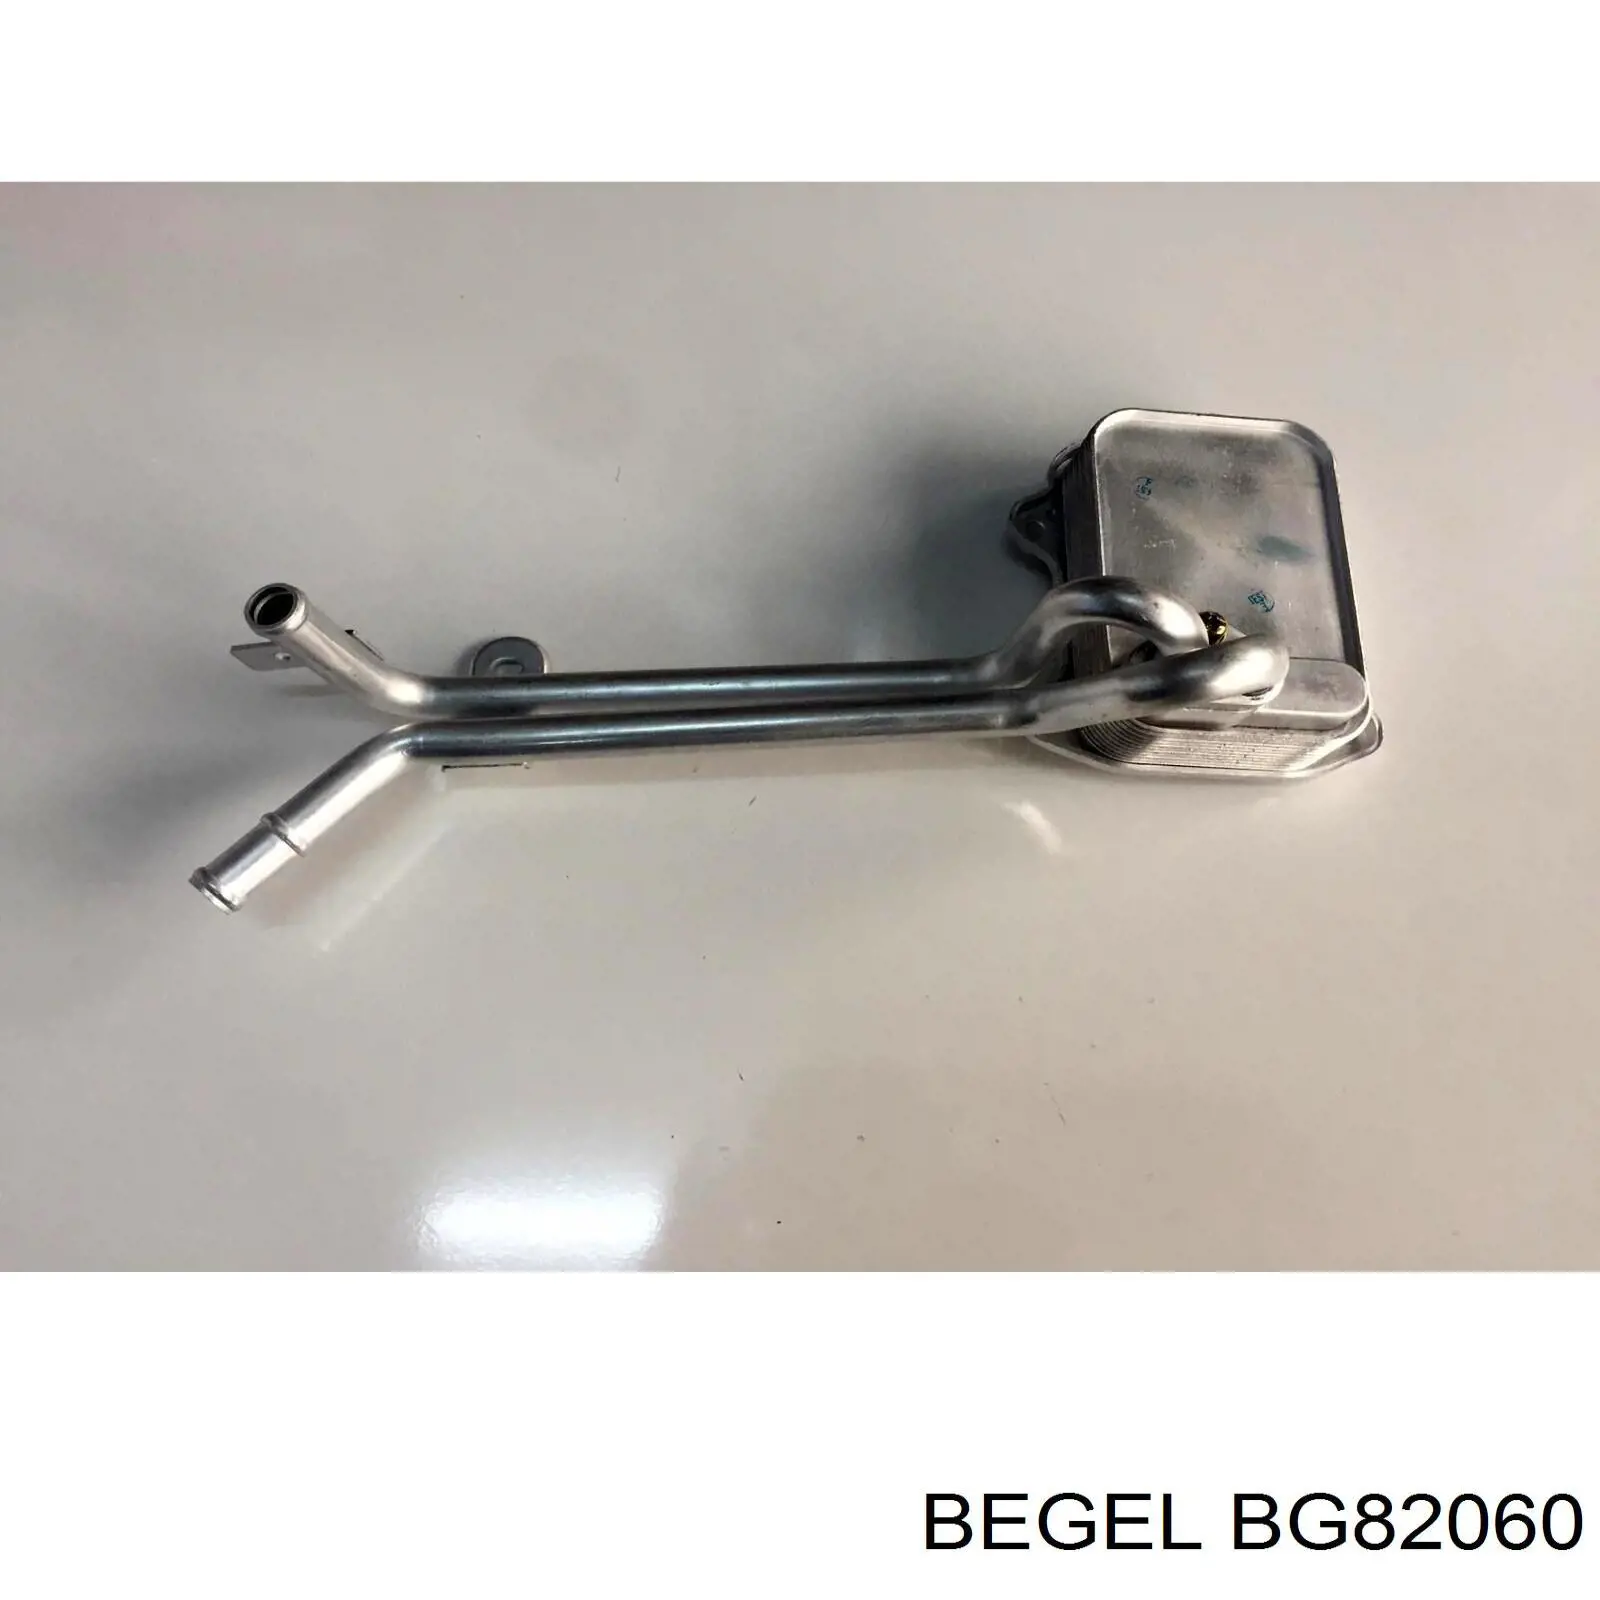 BG82060 Begel sinal de parada traseiro adicional